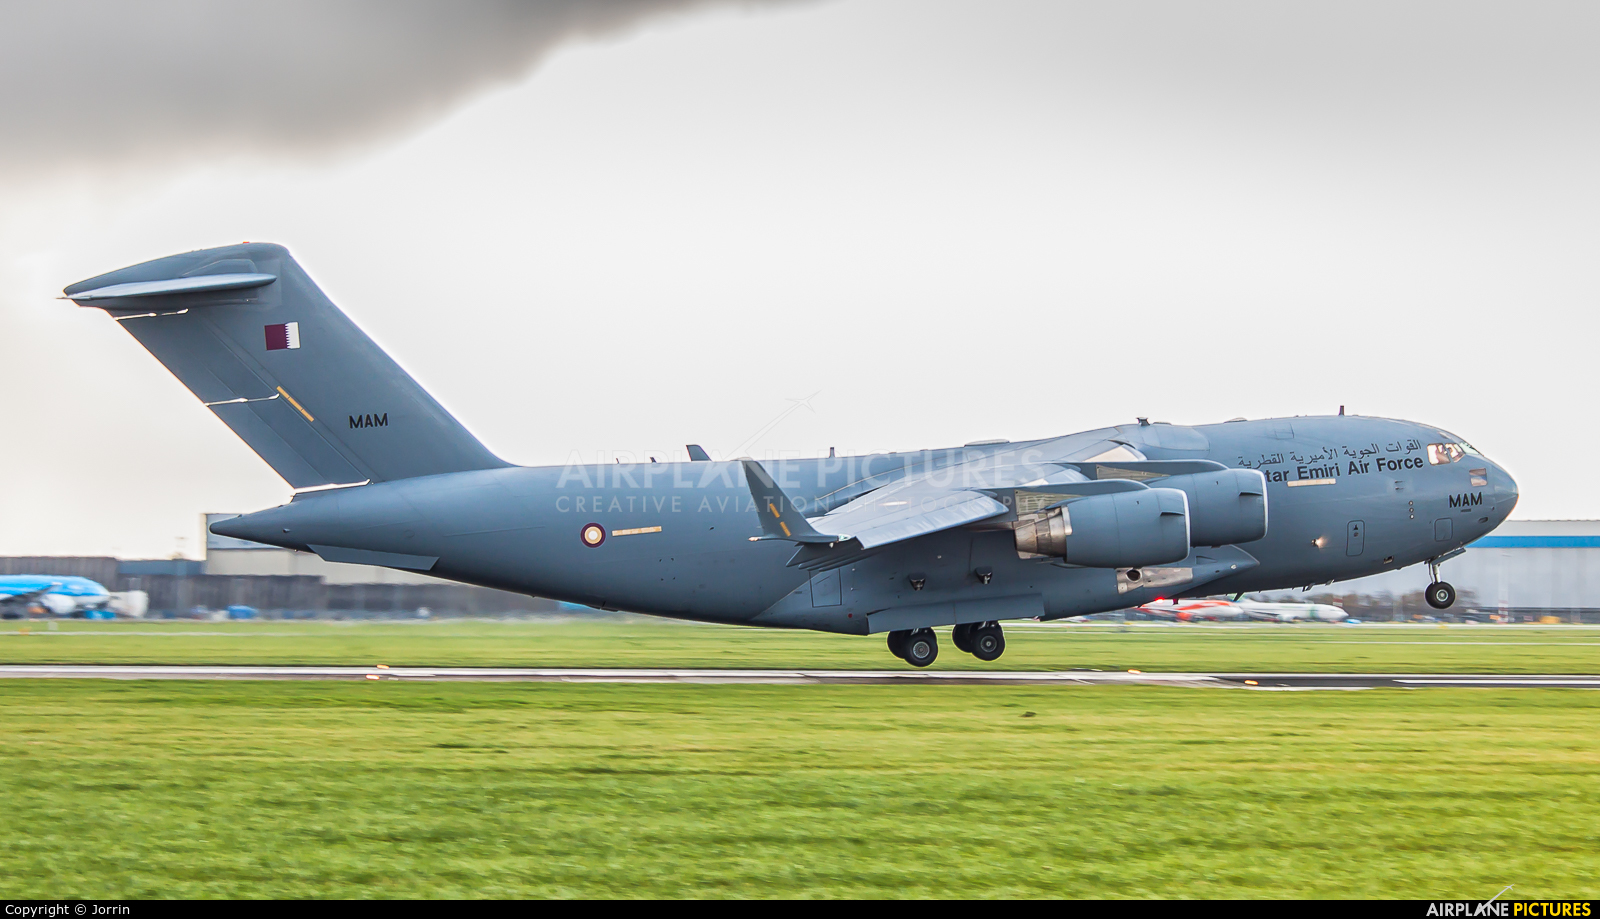 Qatar Amiri - Air Force A7-MAM aircraft at Amsterdam - Schiphol